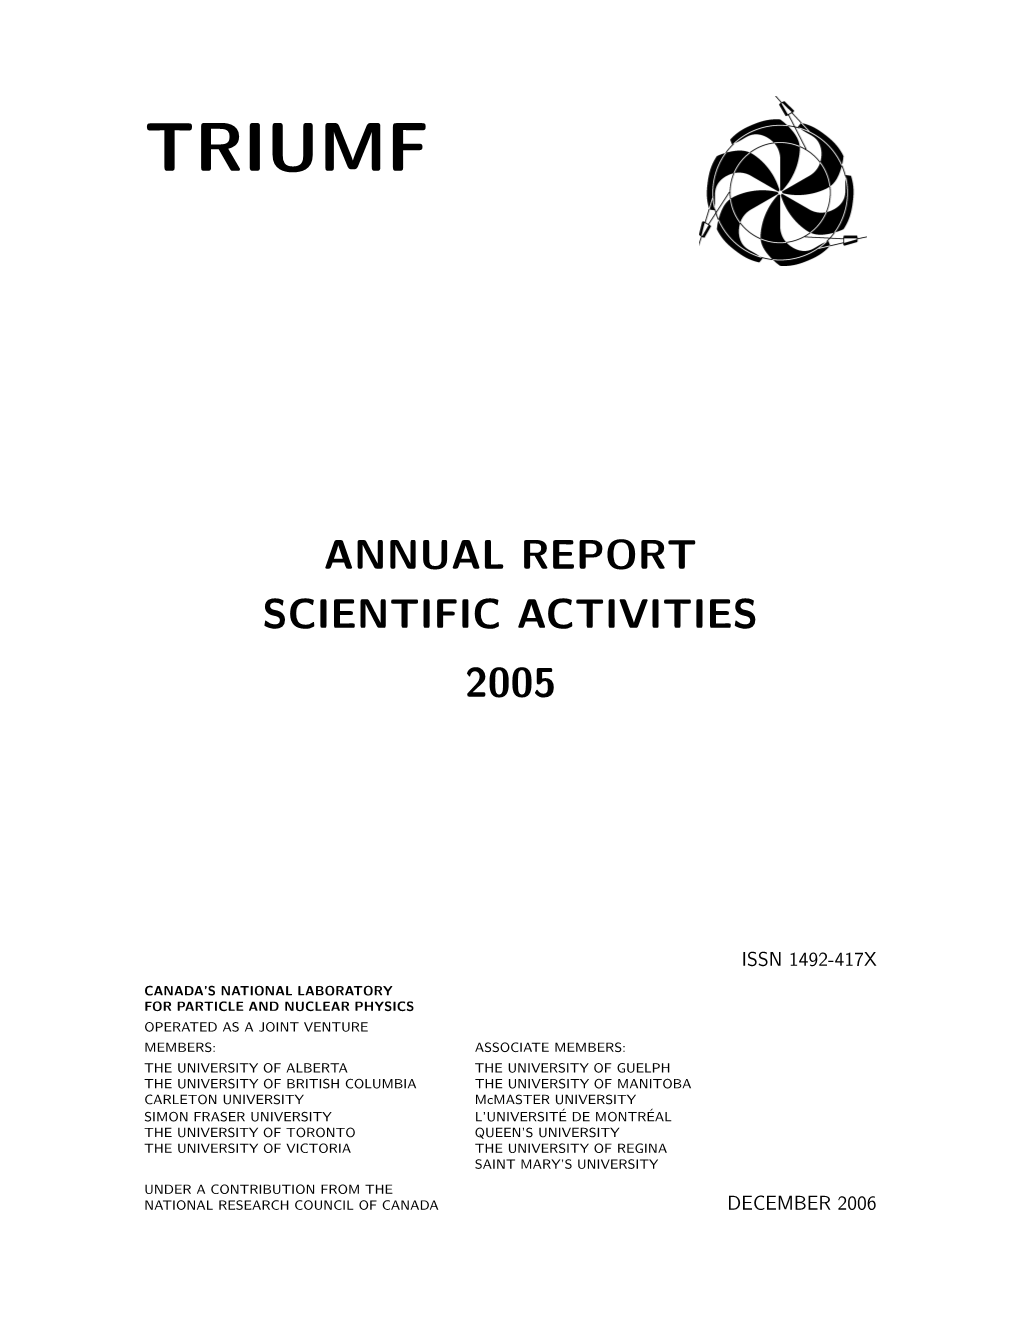 Annual Report Scientific Activities 2005